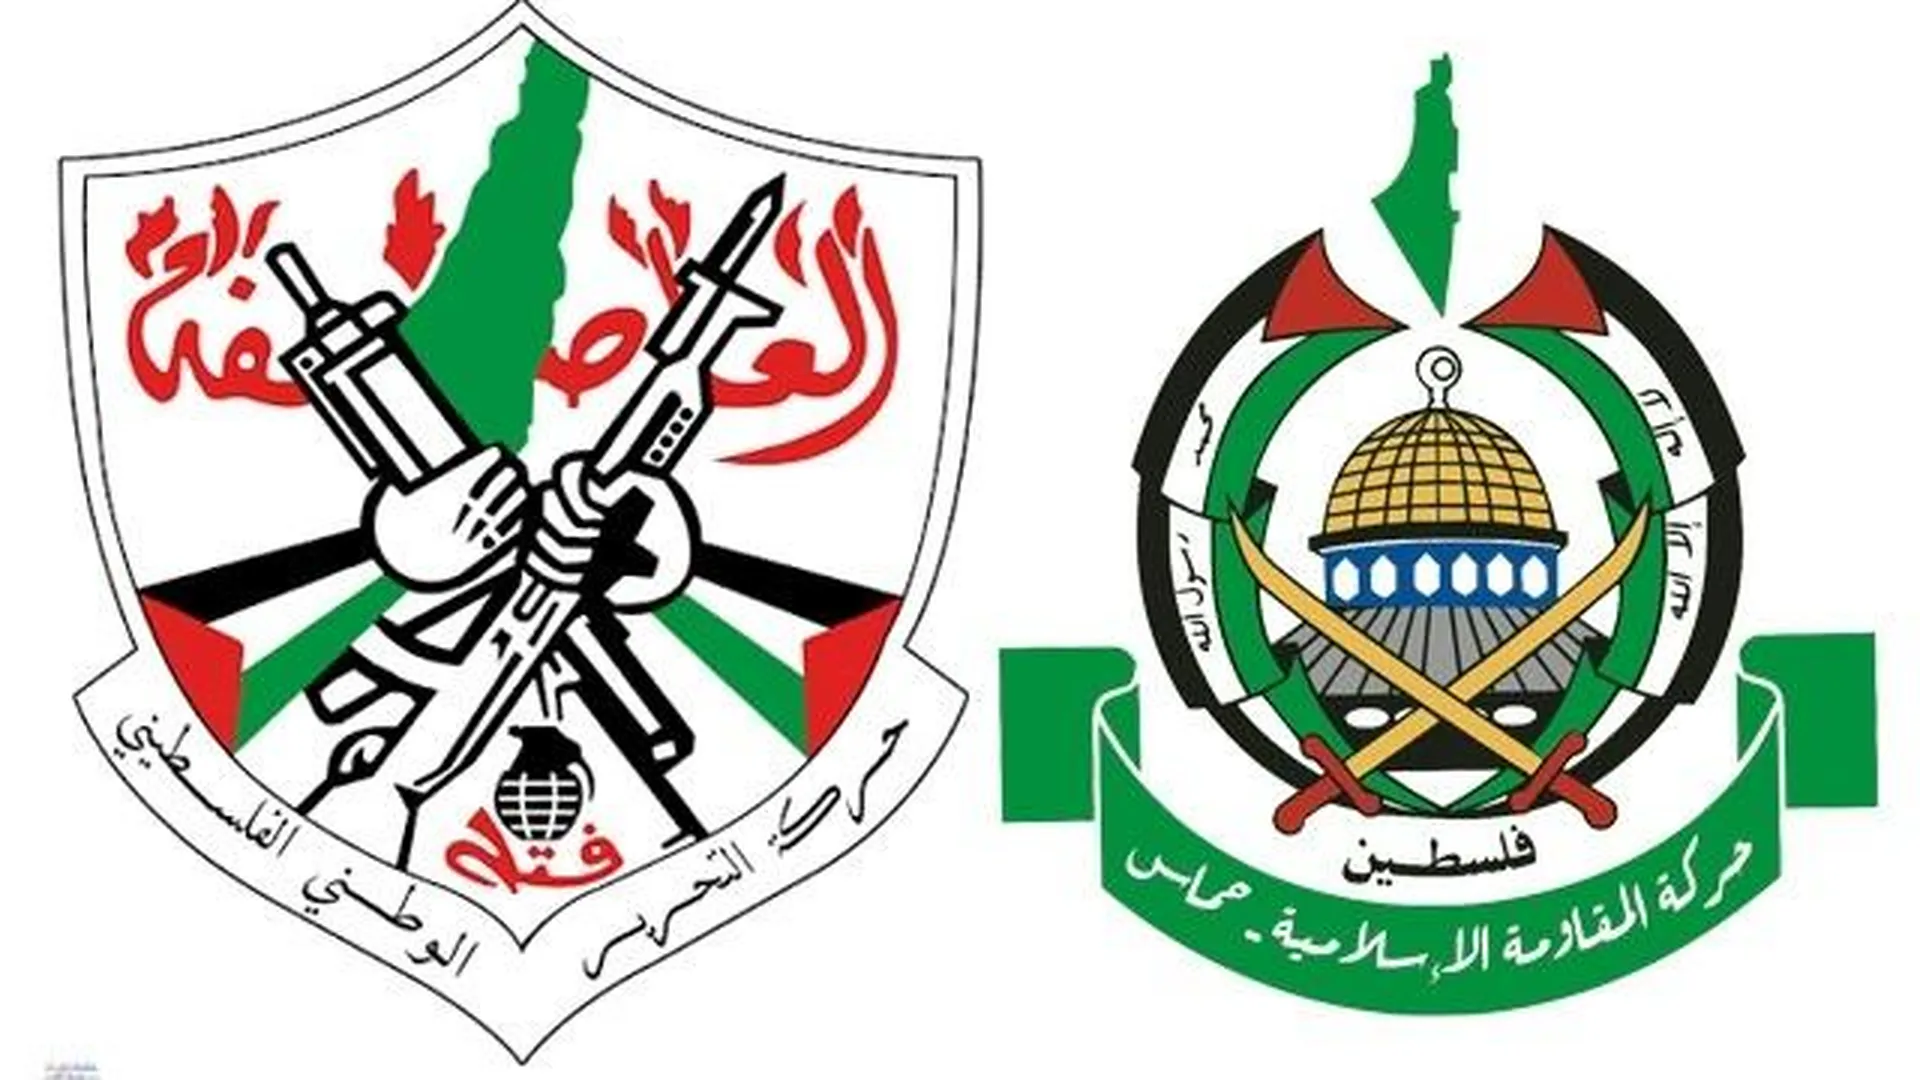 Гербы палестинских политических партий ФАТХ (слева) и ХАМАС (справа)